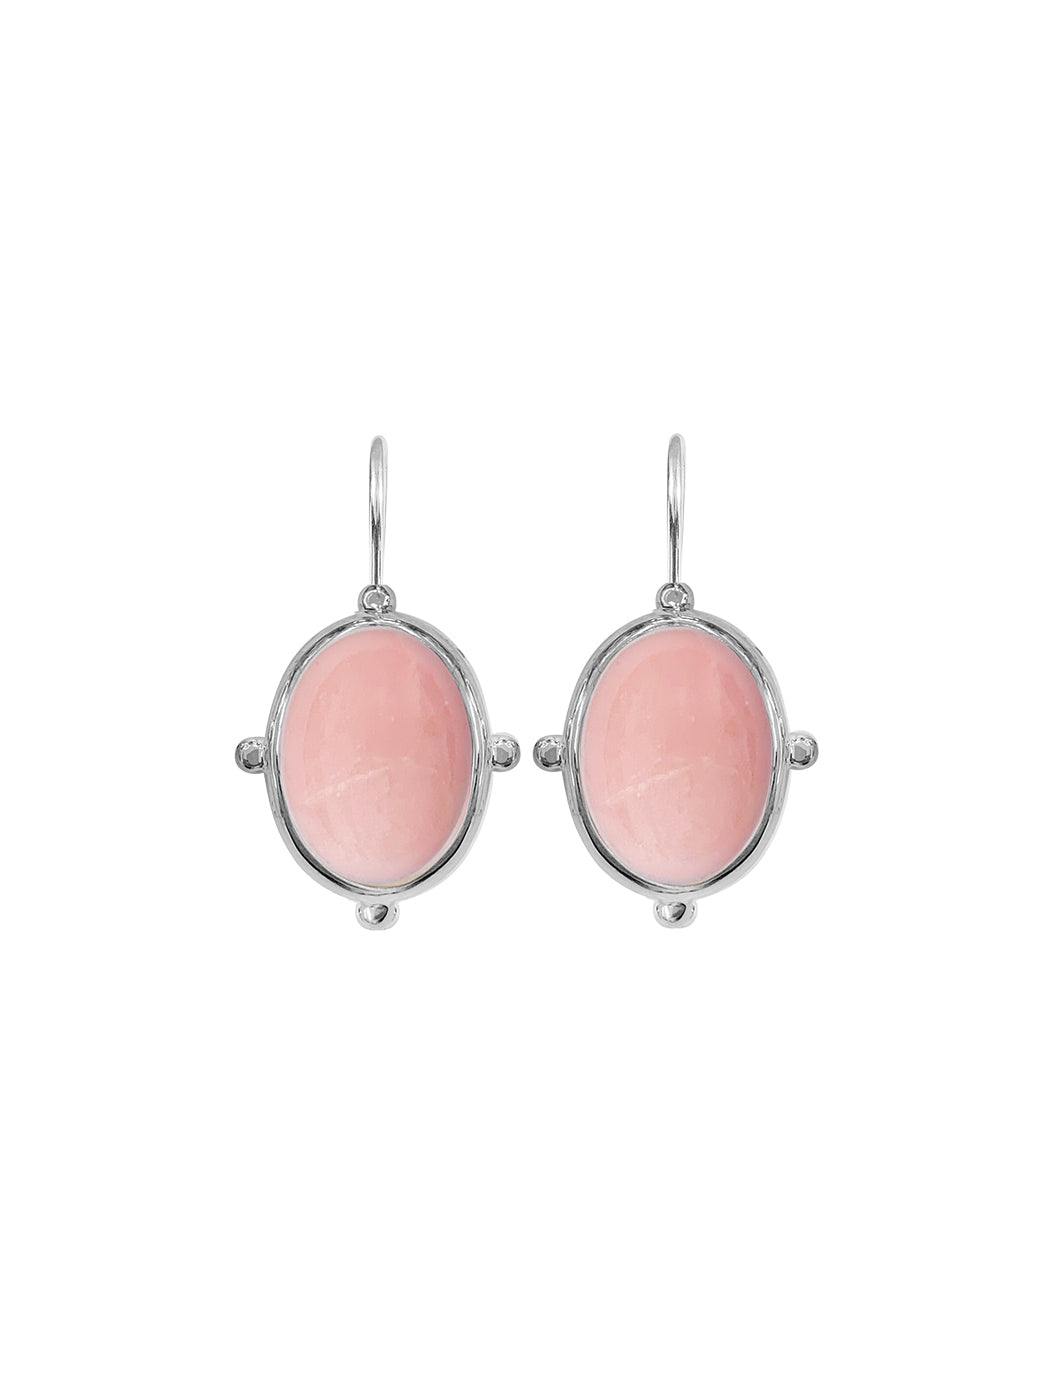 Fiorina Jewellery Oval Button Earrings Pink Opal